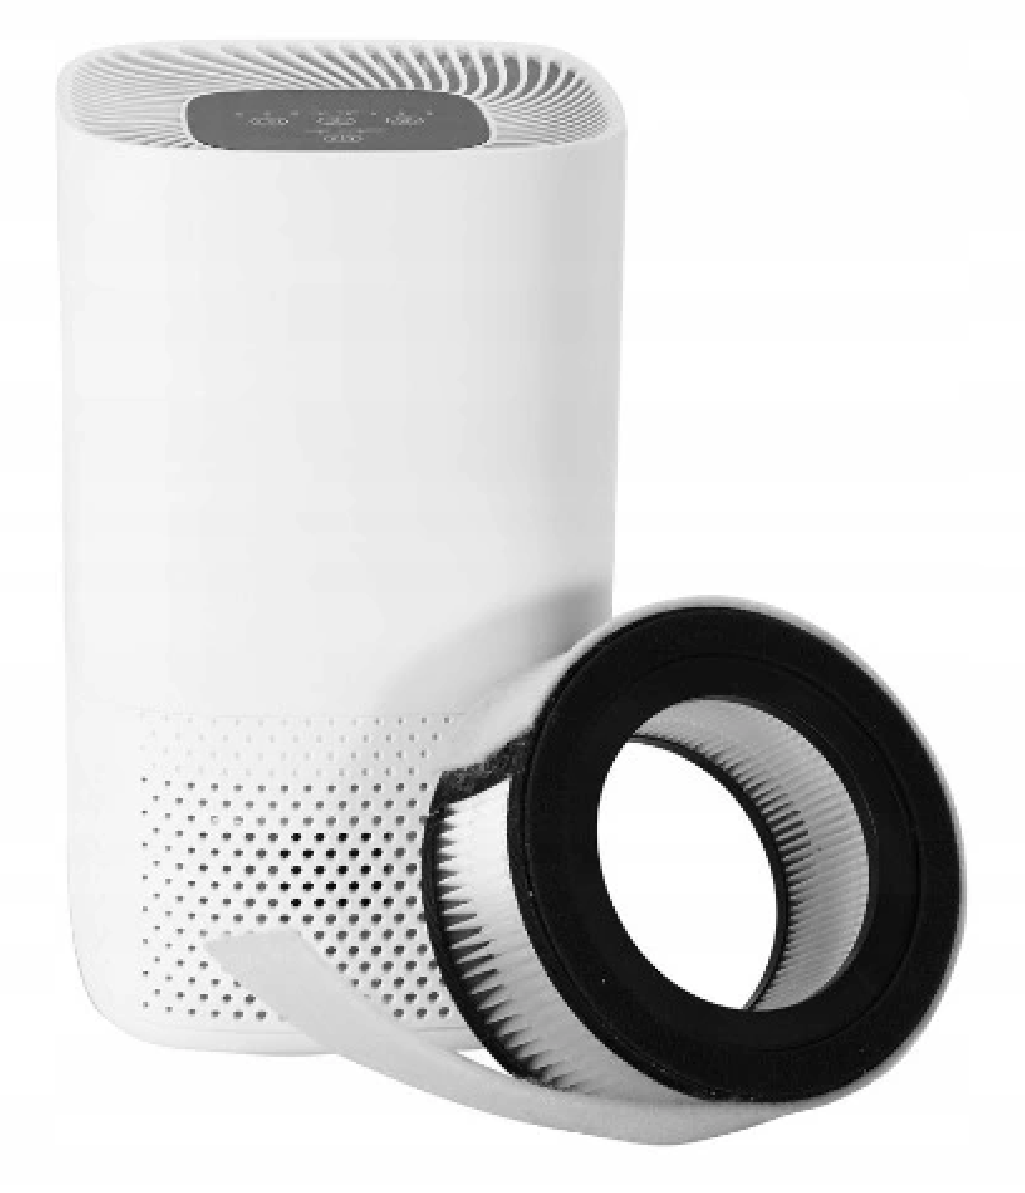 Lanaform Air Purifier filtr do oczyszczacza powietrza